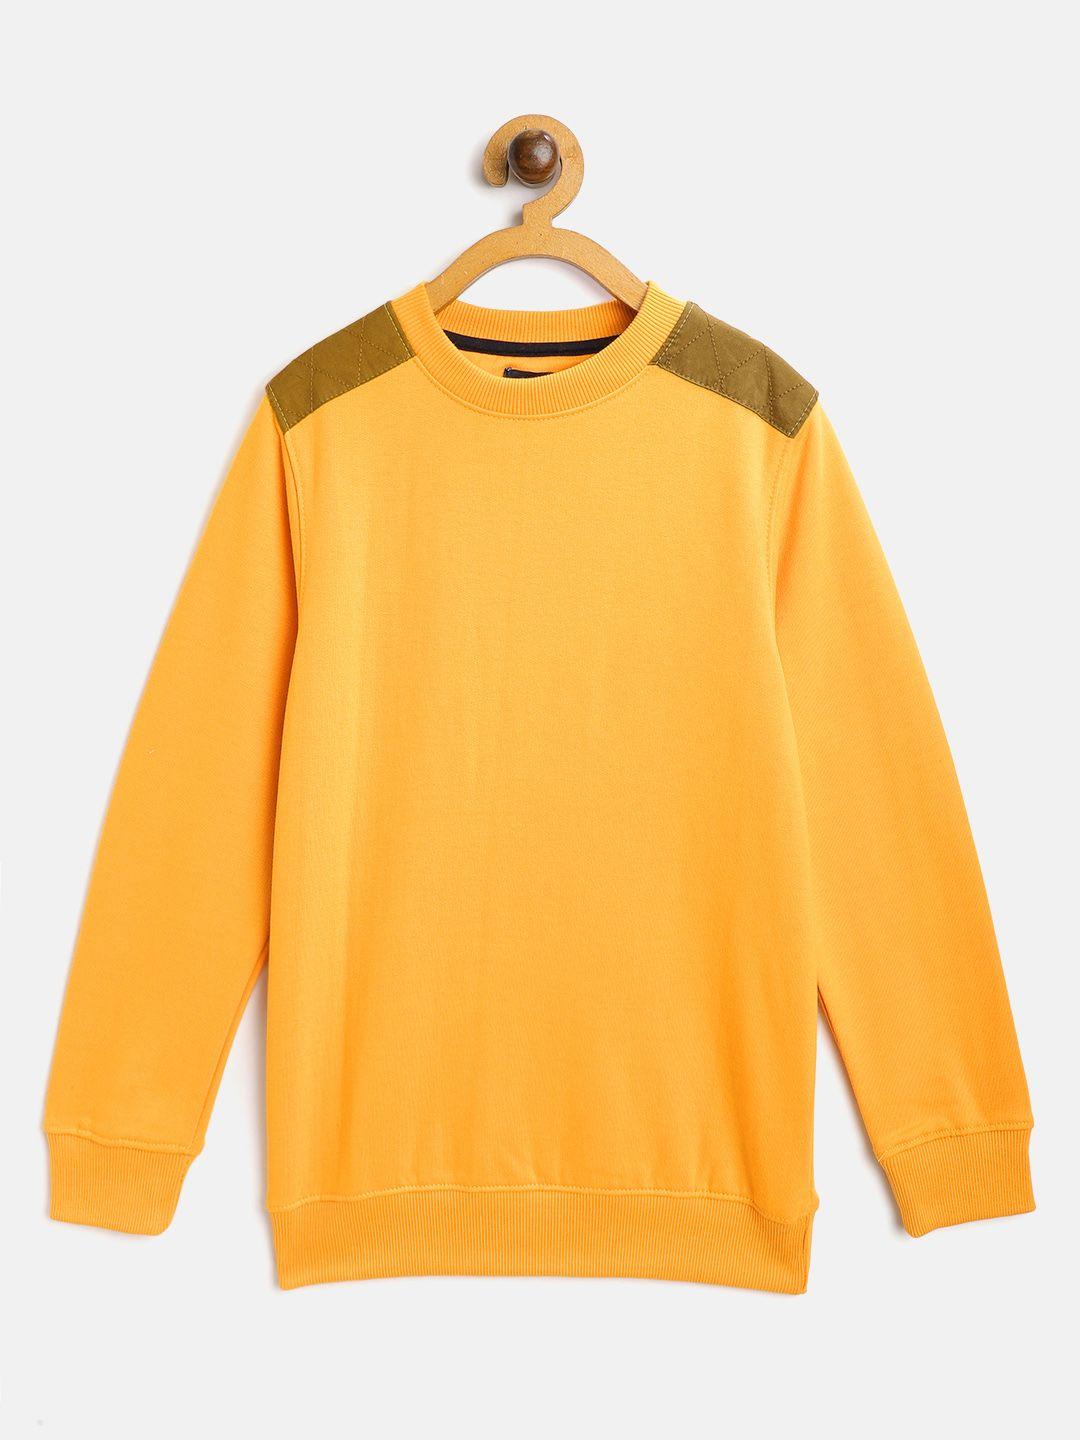 m&h juniors boys mustard yellow sweatshirt